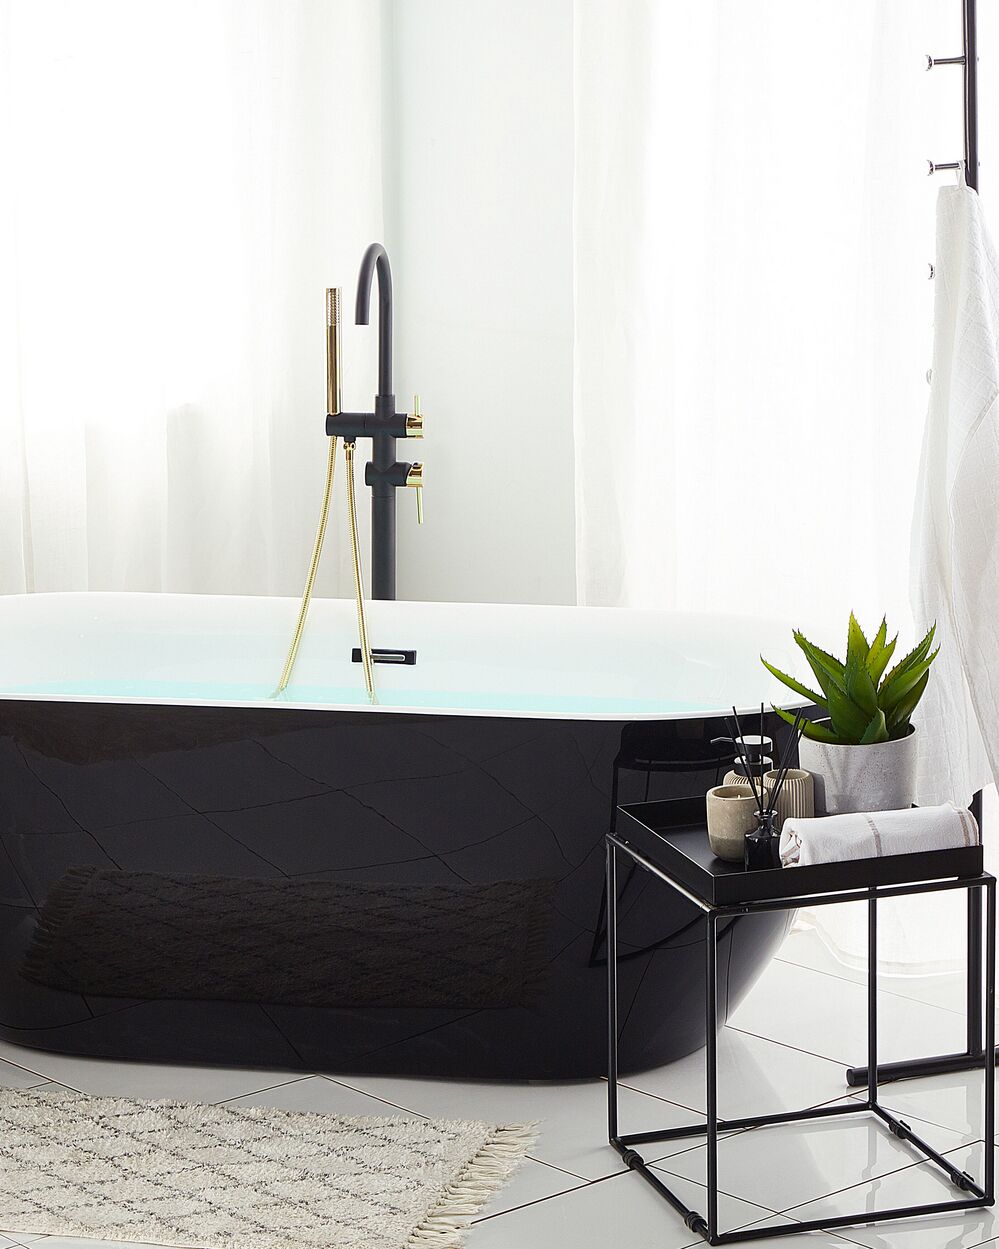 Badkuip vrijstaand zwart 170 cm - ✓ Levering